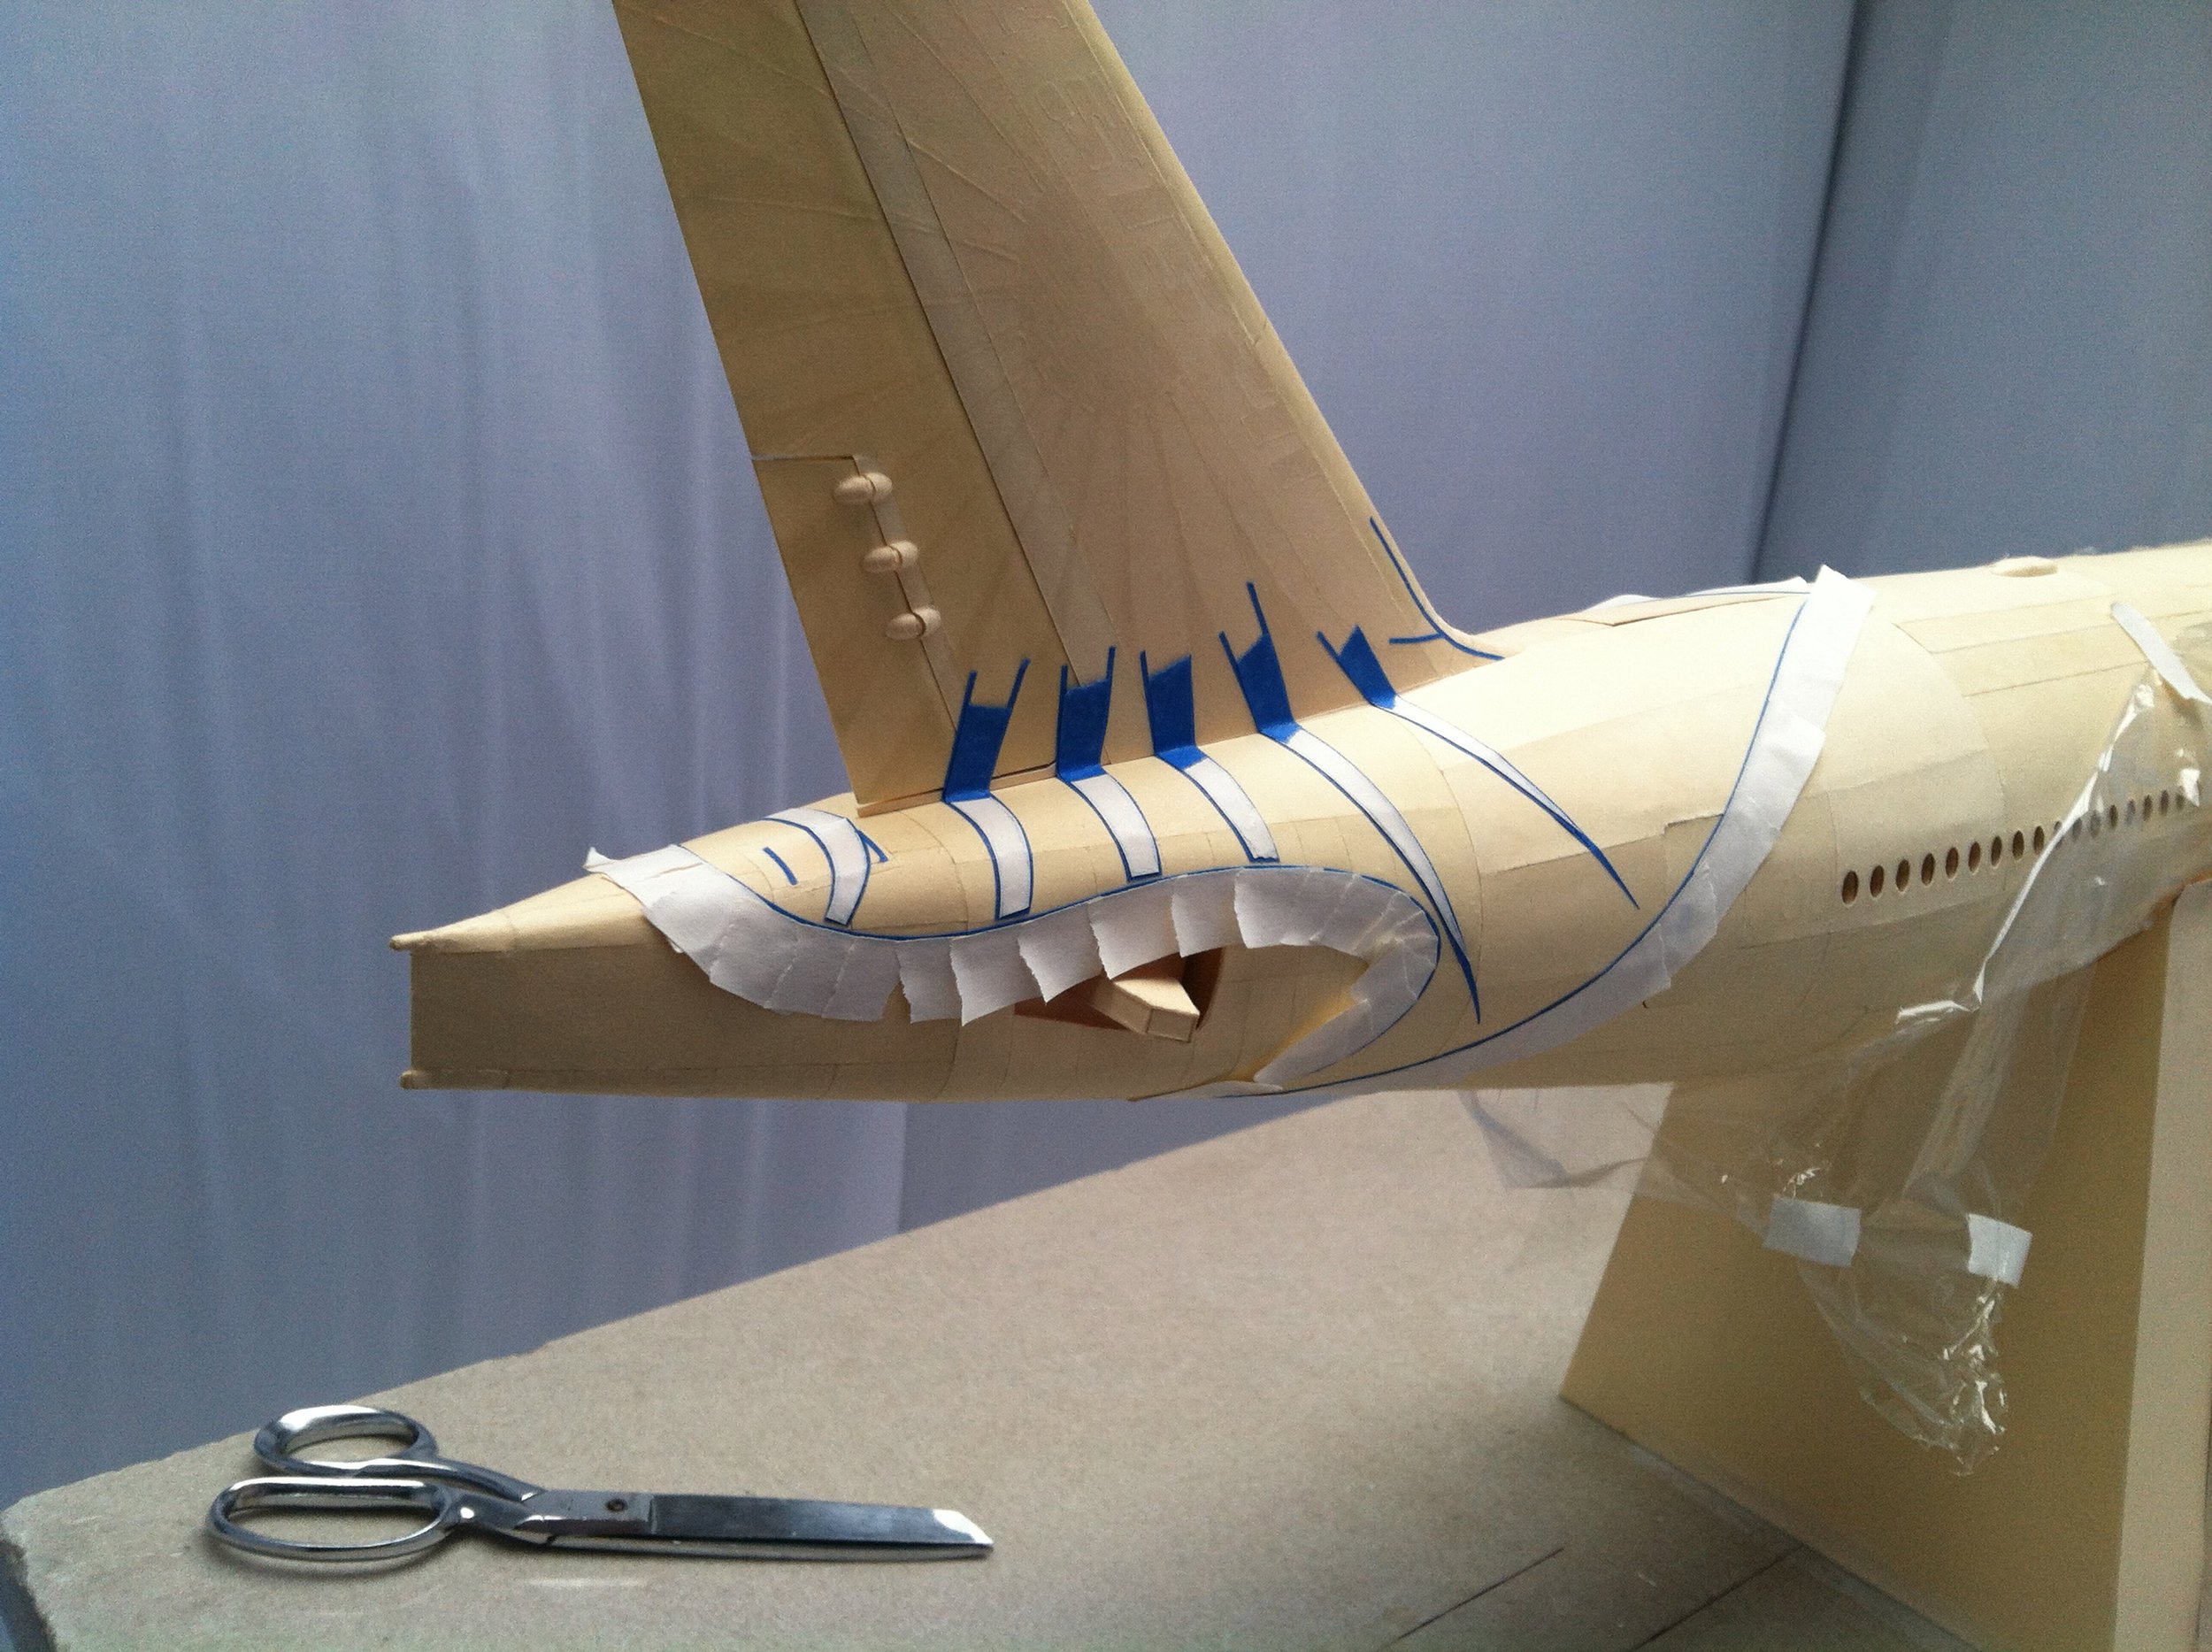 Большая модель самолета. Бумажная модель Air India Boeing 777. Бумажное моделирование Боинг 777. Самолет из картона. Модель самолета из картона.